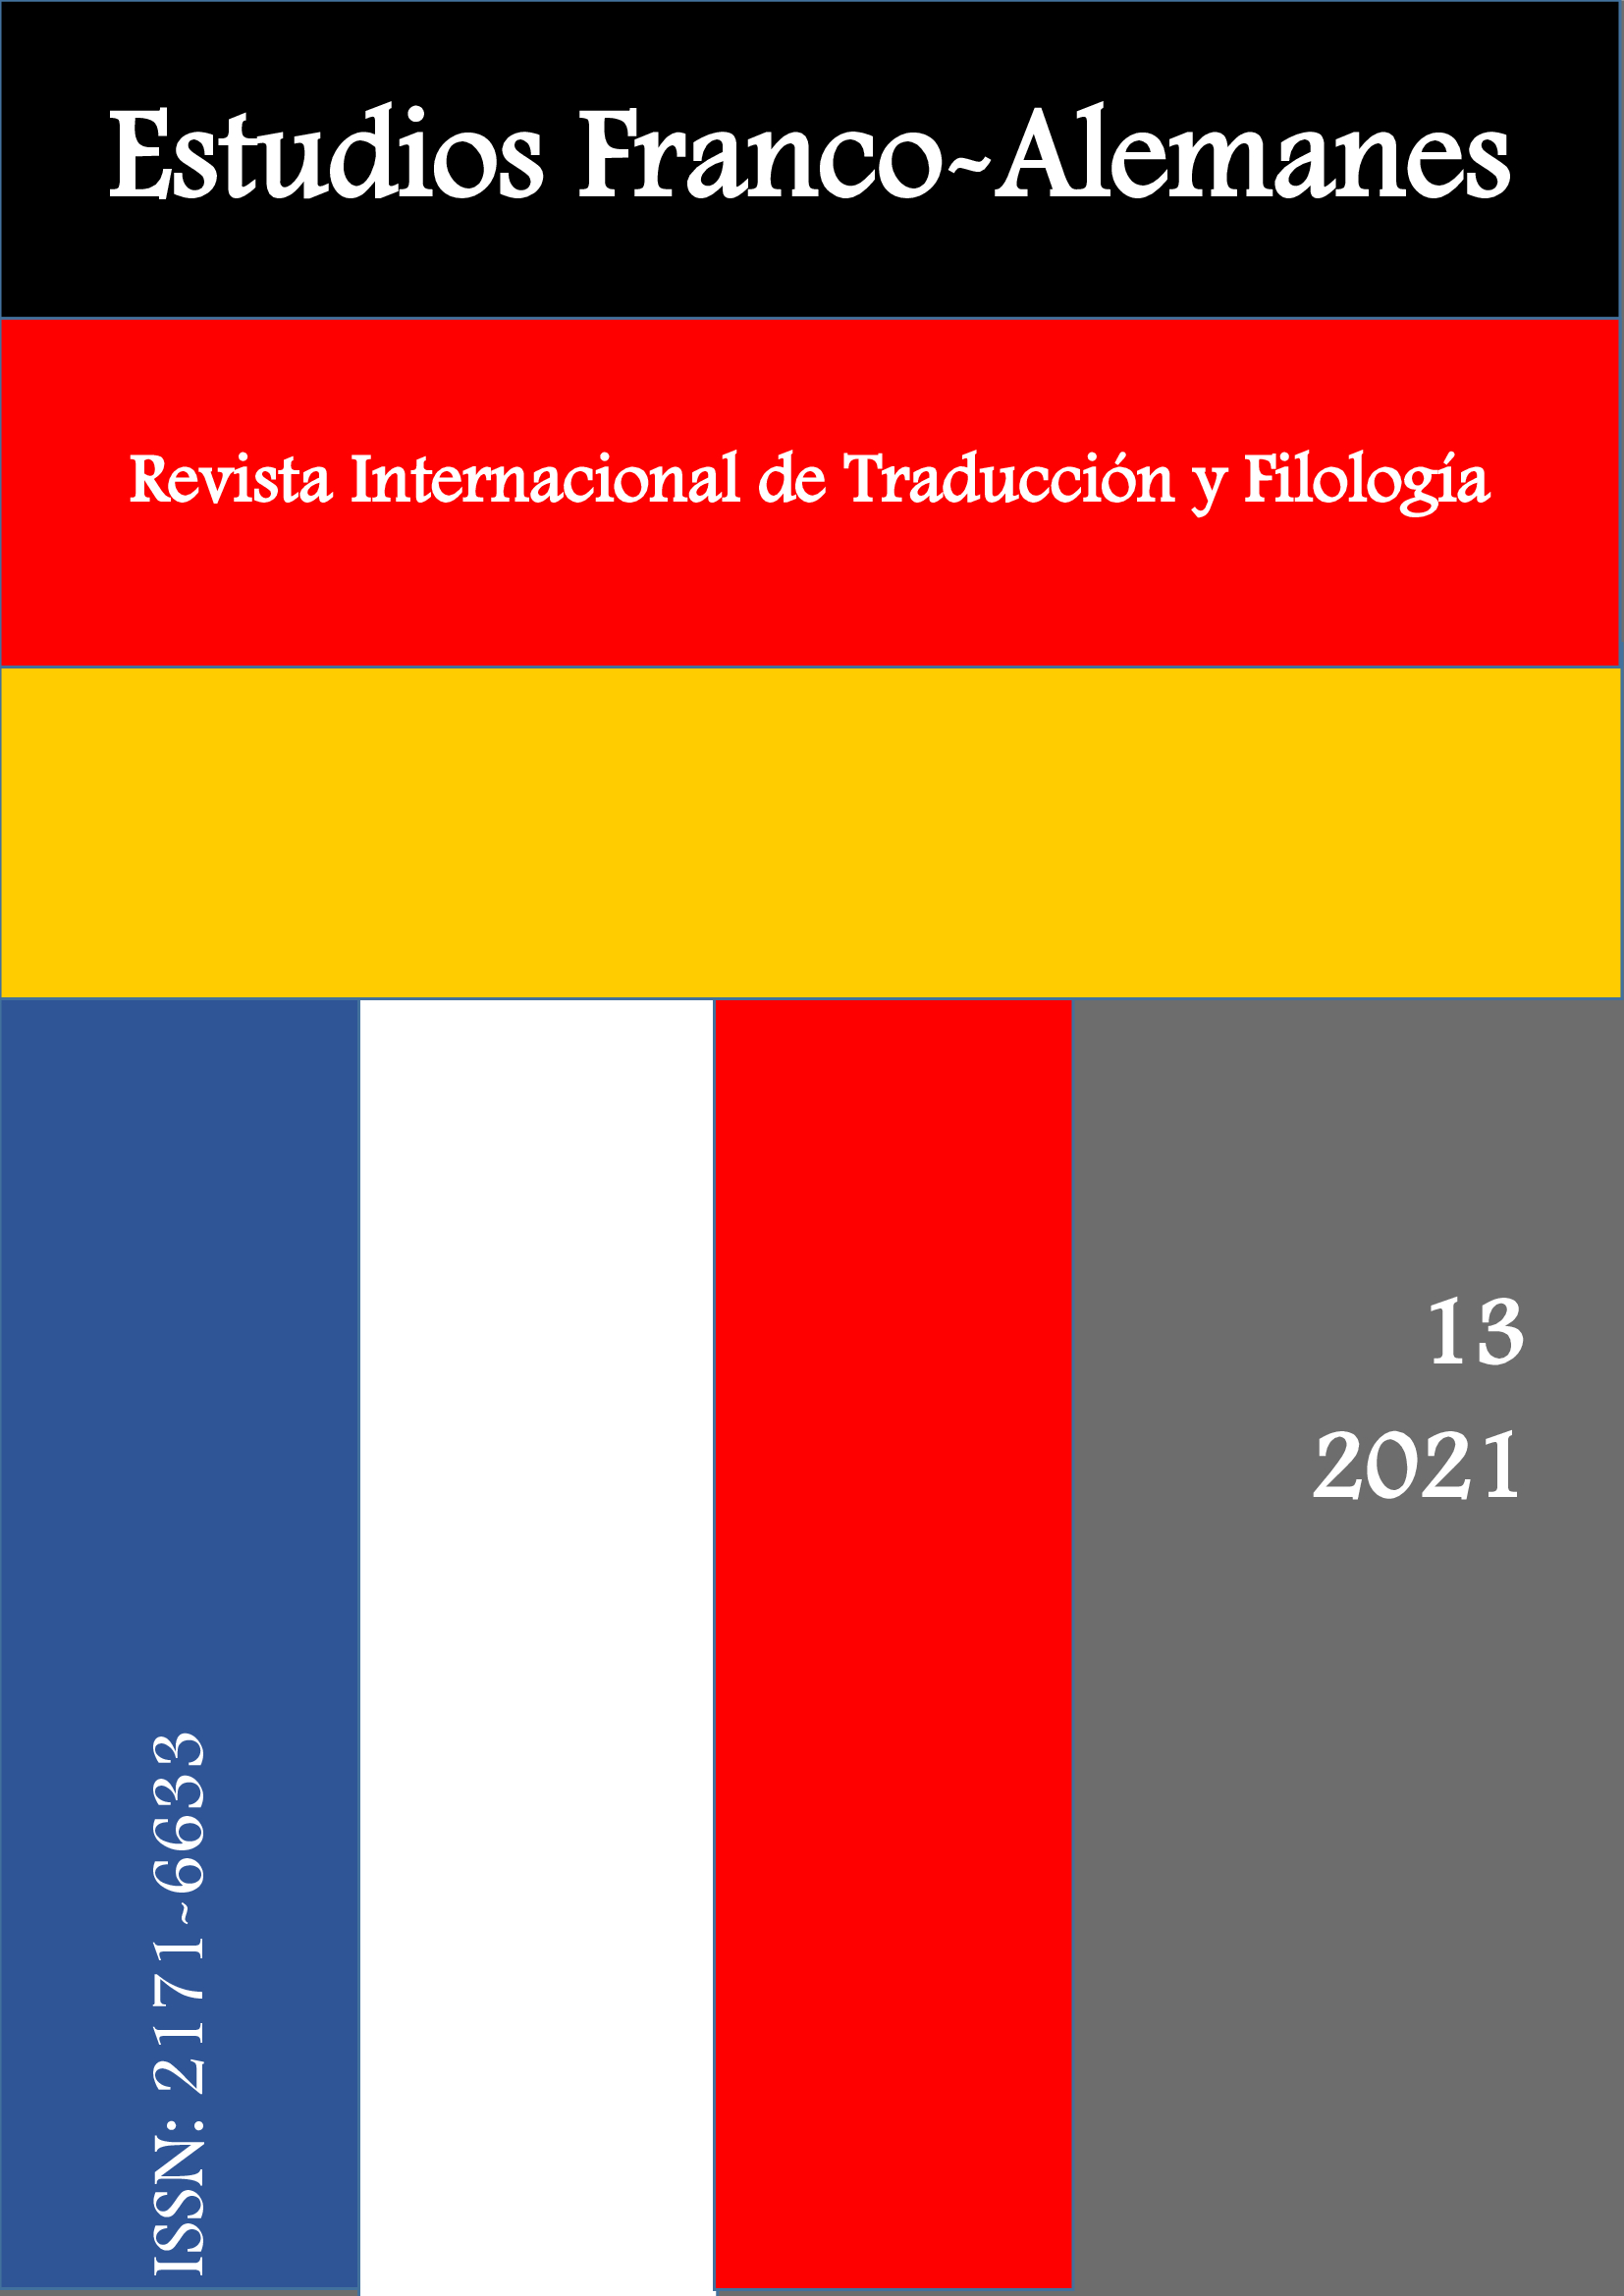 Volumen 13 de Estudios Franco-Alemanes, correspondiente al año 2021.